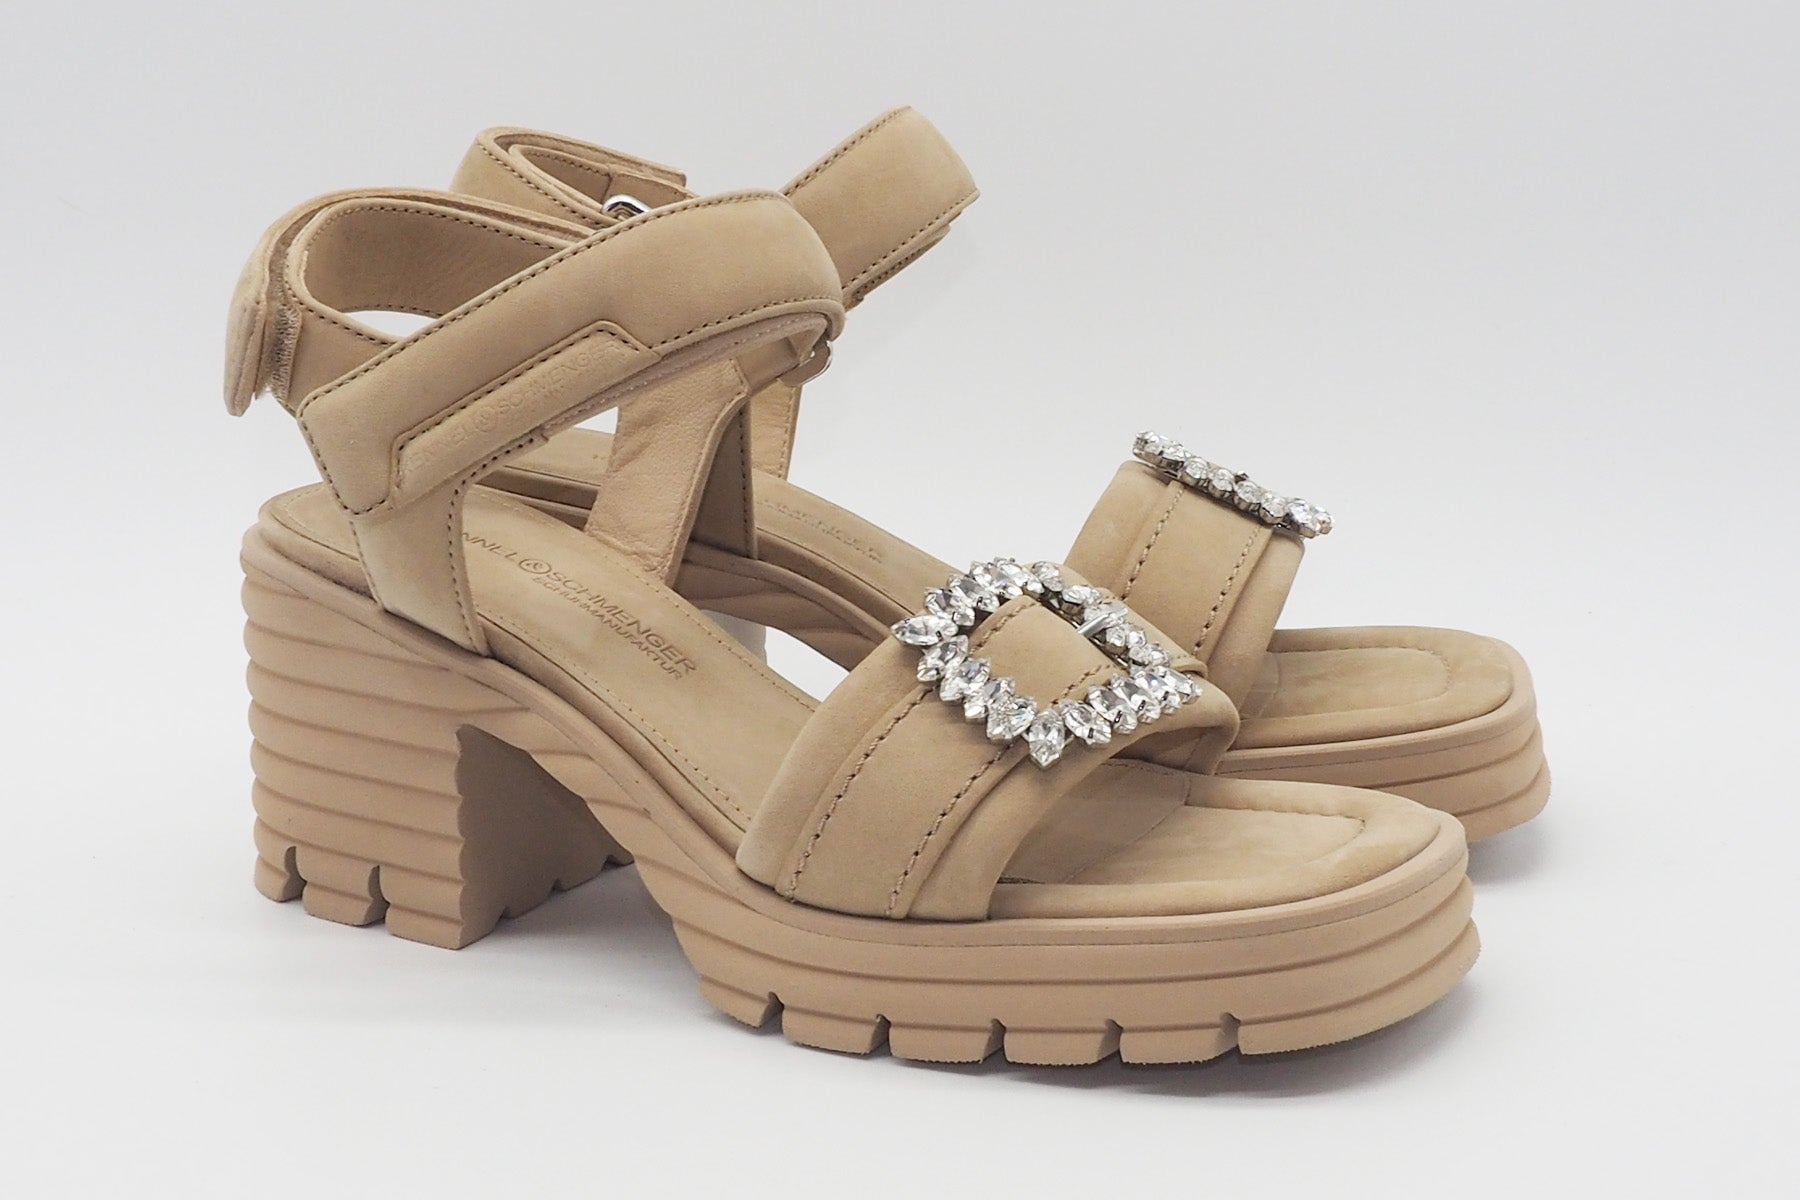 Edle Damen Absatz-Sandale aus Nubukleder in Beige - Absatz 7,5cm Damen Sandalen Kennel & Schmenger 